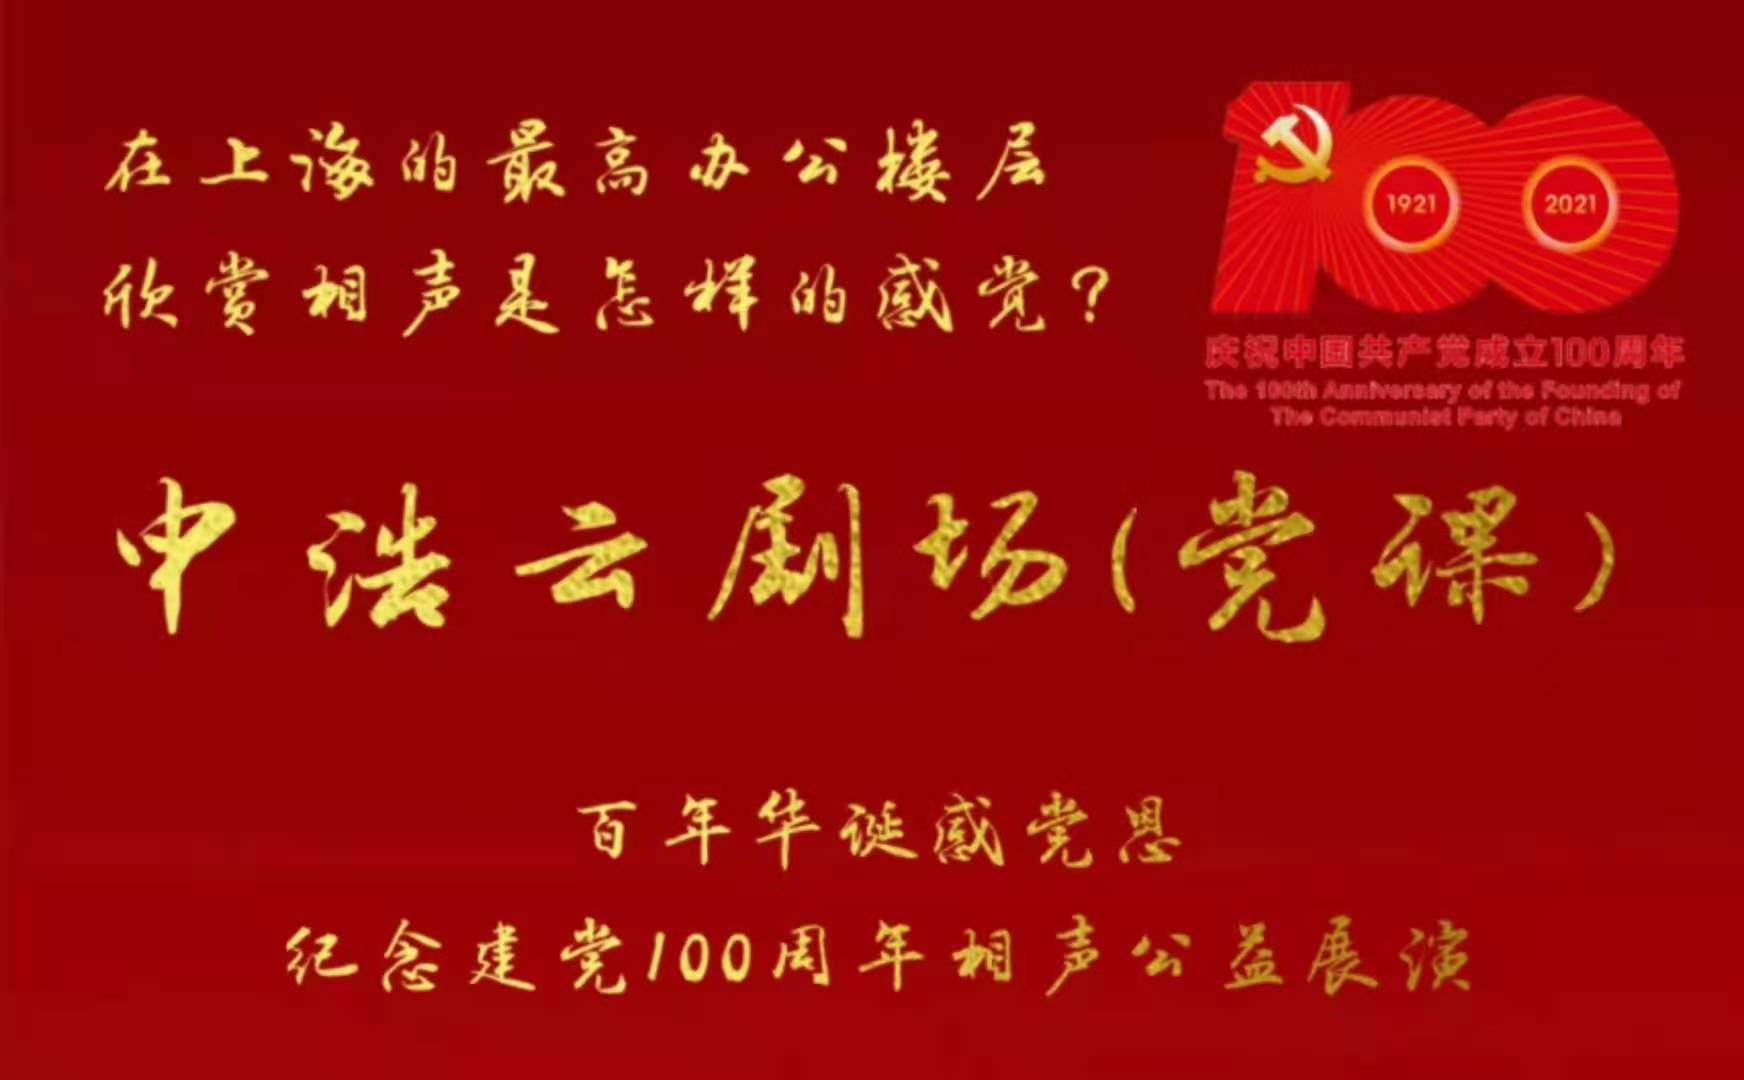 申浩纪念建党100周年相声公益展演成功在上海中心75层举办 | 申浩党建